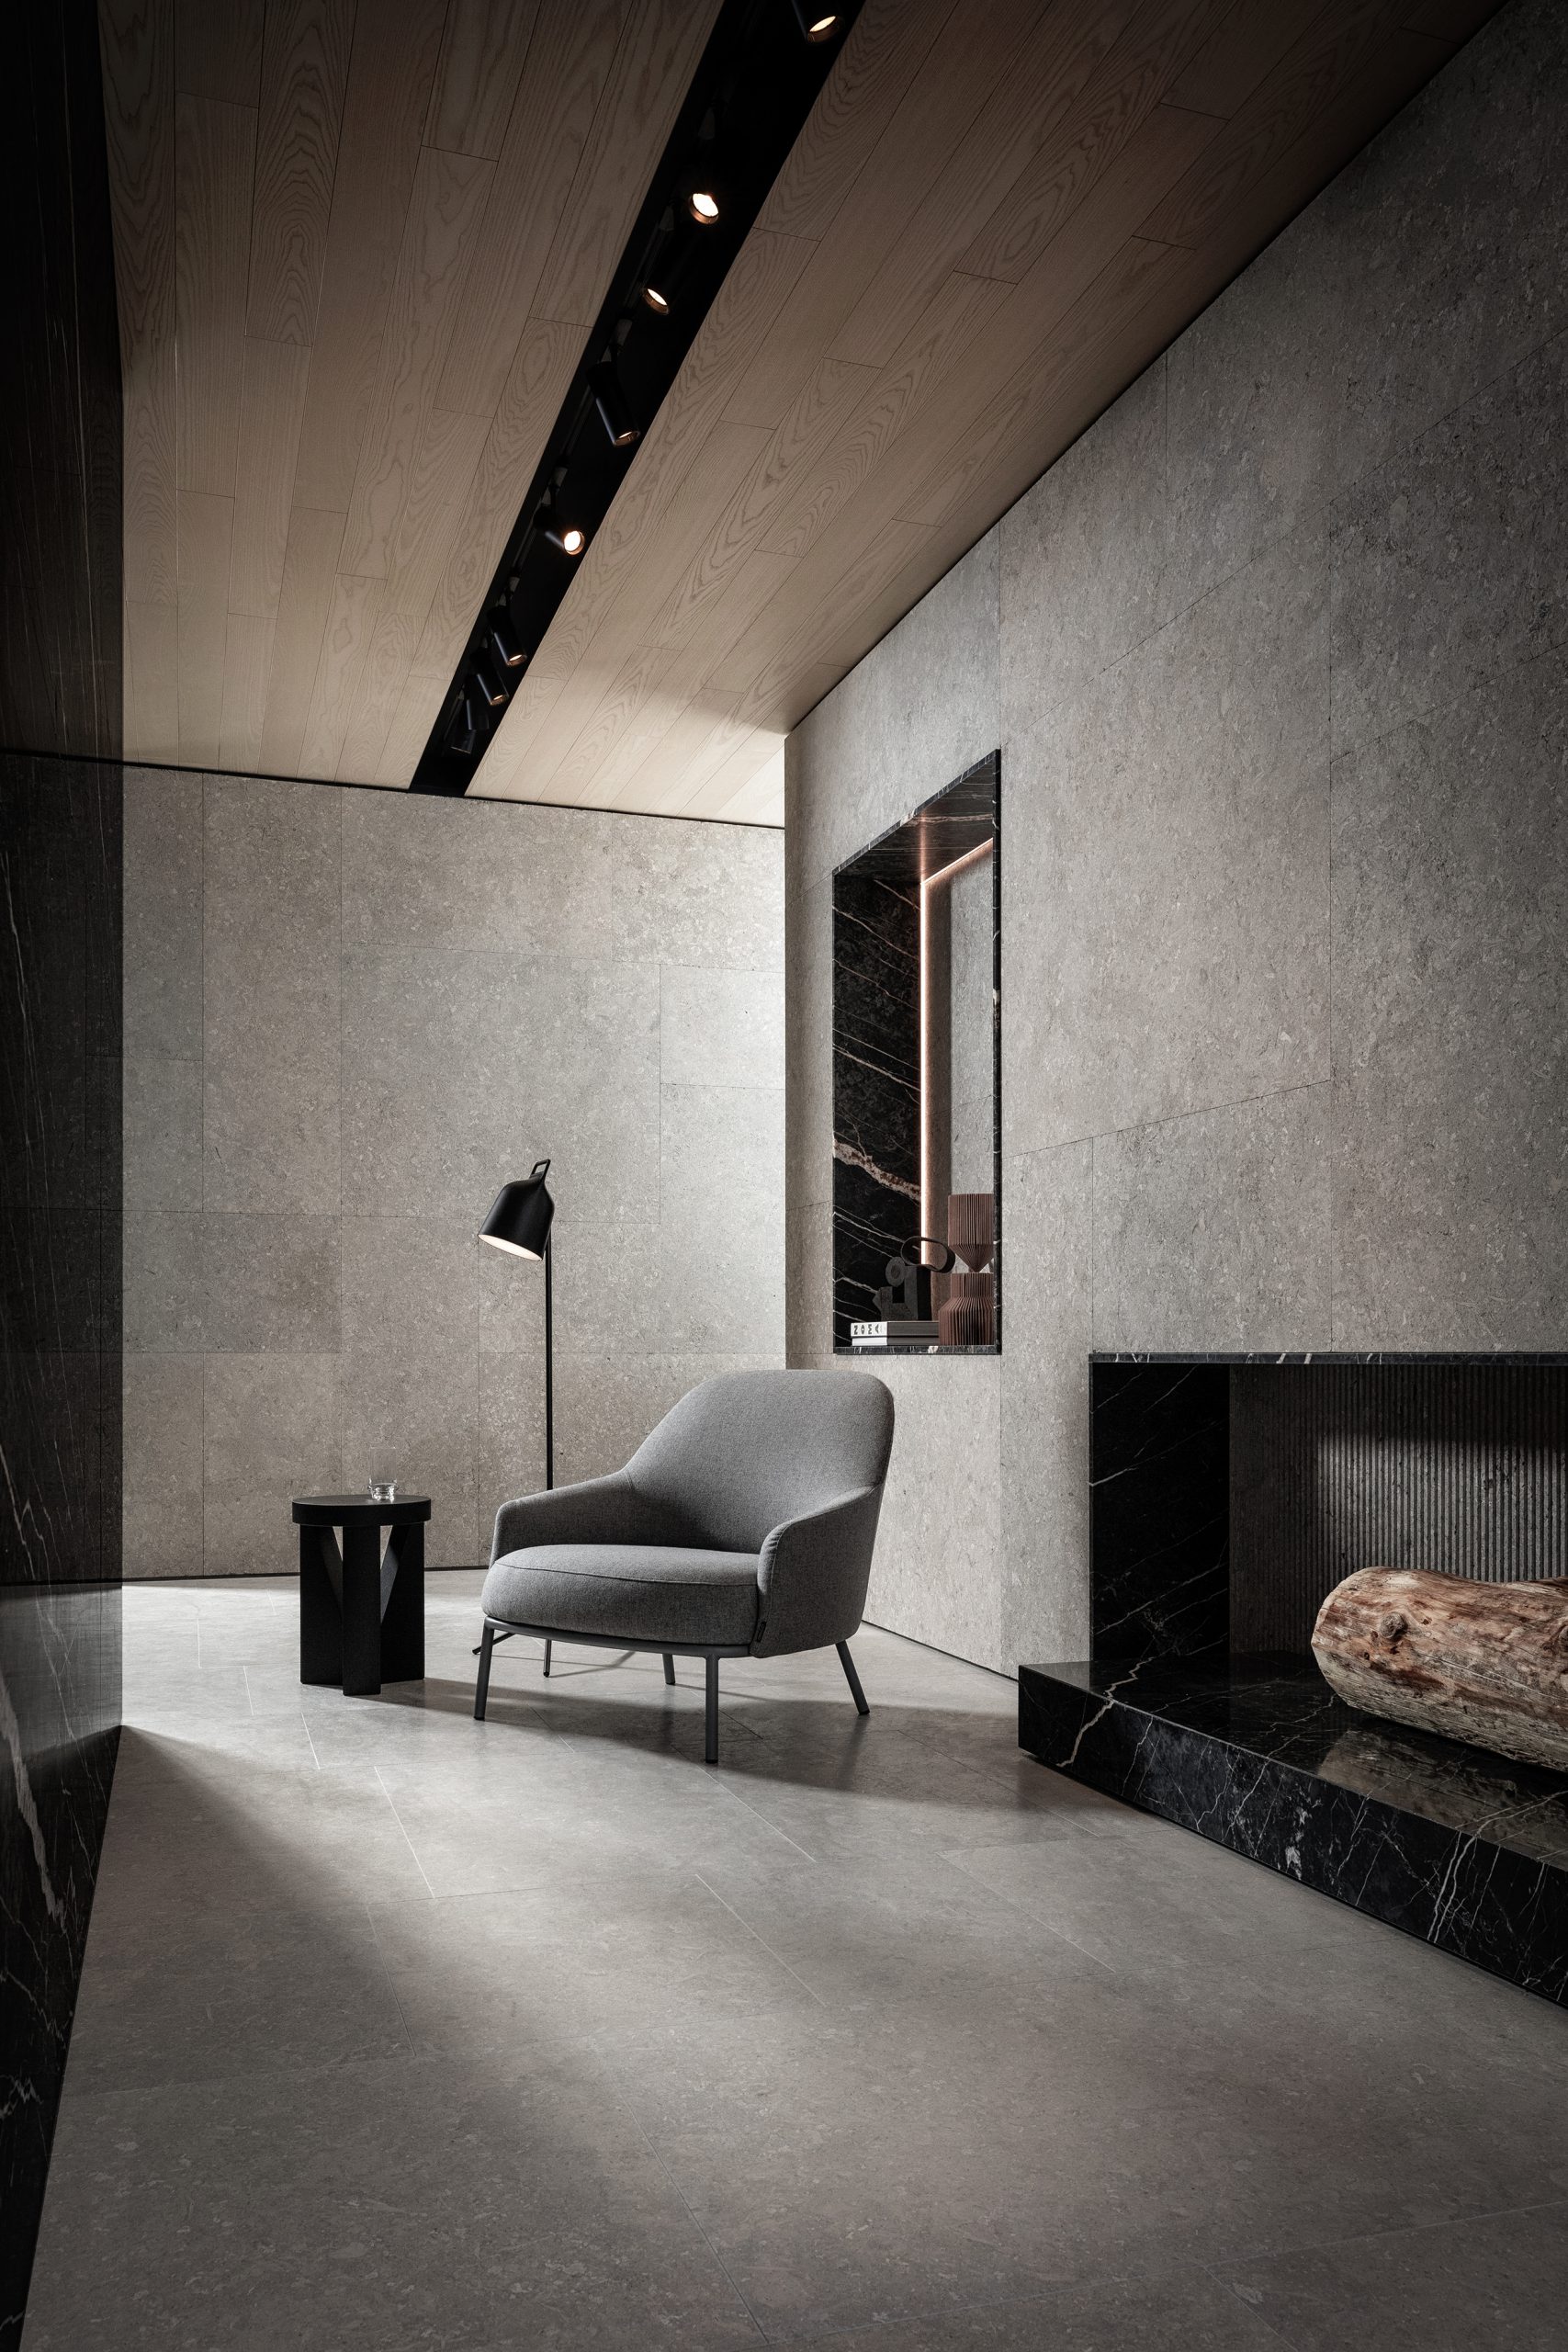 Showroom Interior Design by Debiasi Sandri for Grassi Pietre